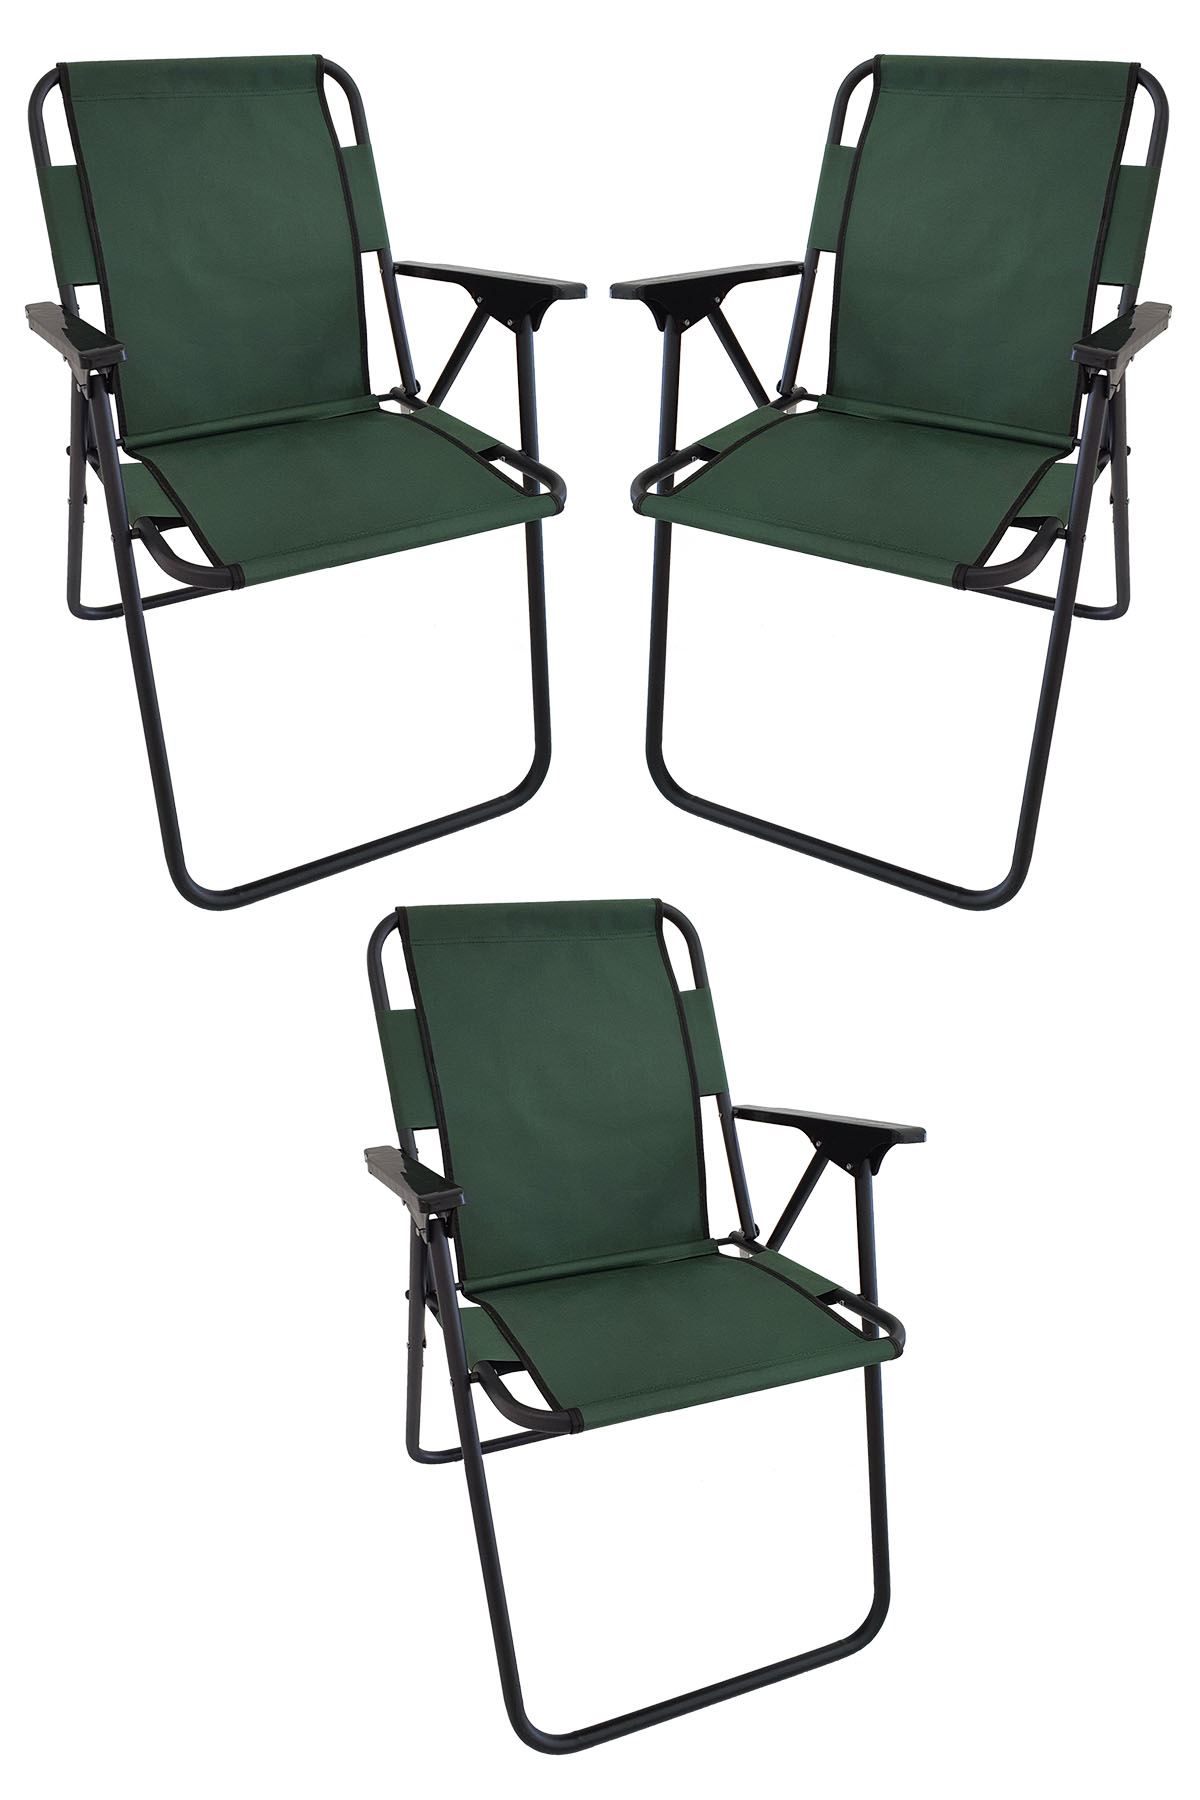 Bofigo 3 Pcs Camping Chair Folding Chair Picnic Chair Beach Chair Green